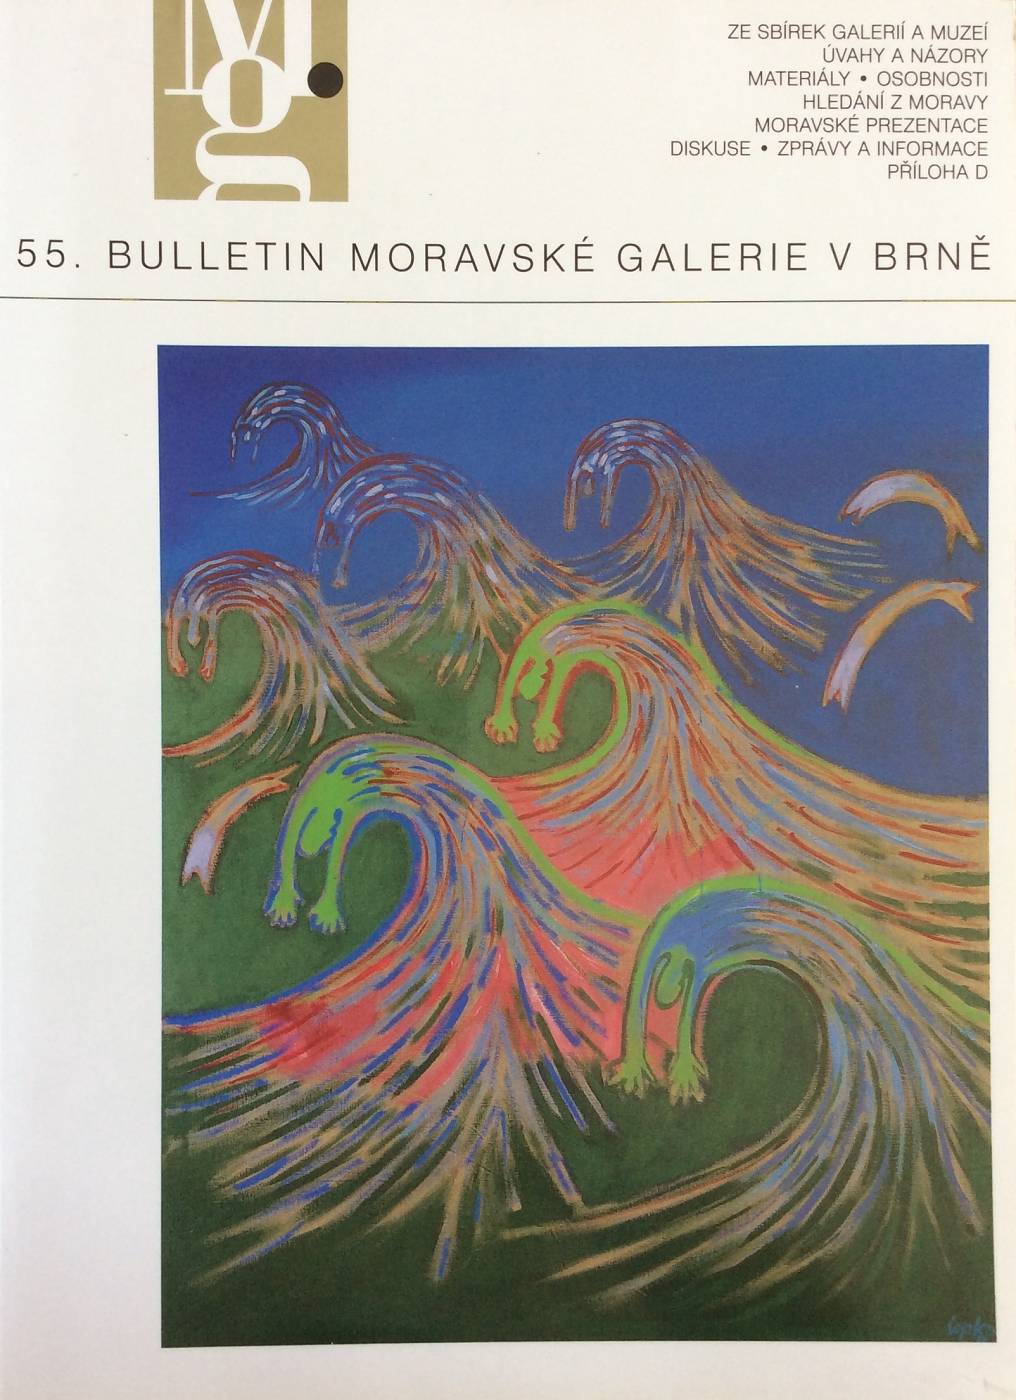 55. Bulletin Moravské galerie v Brně